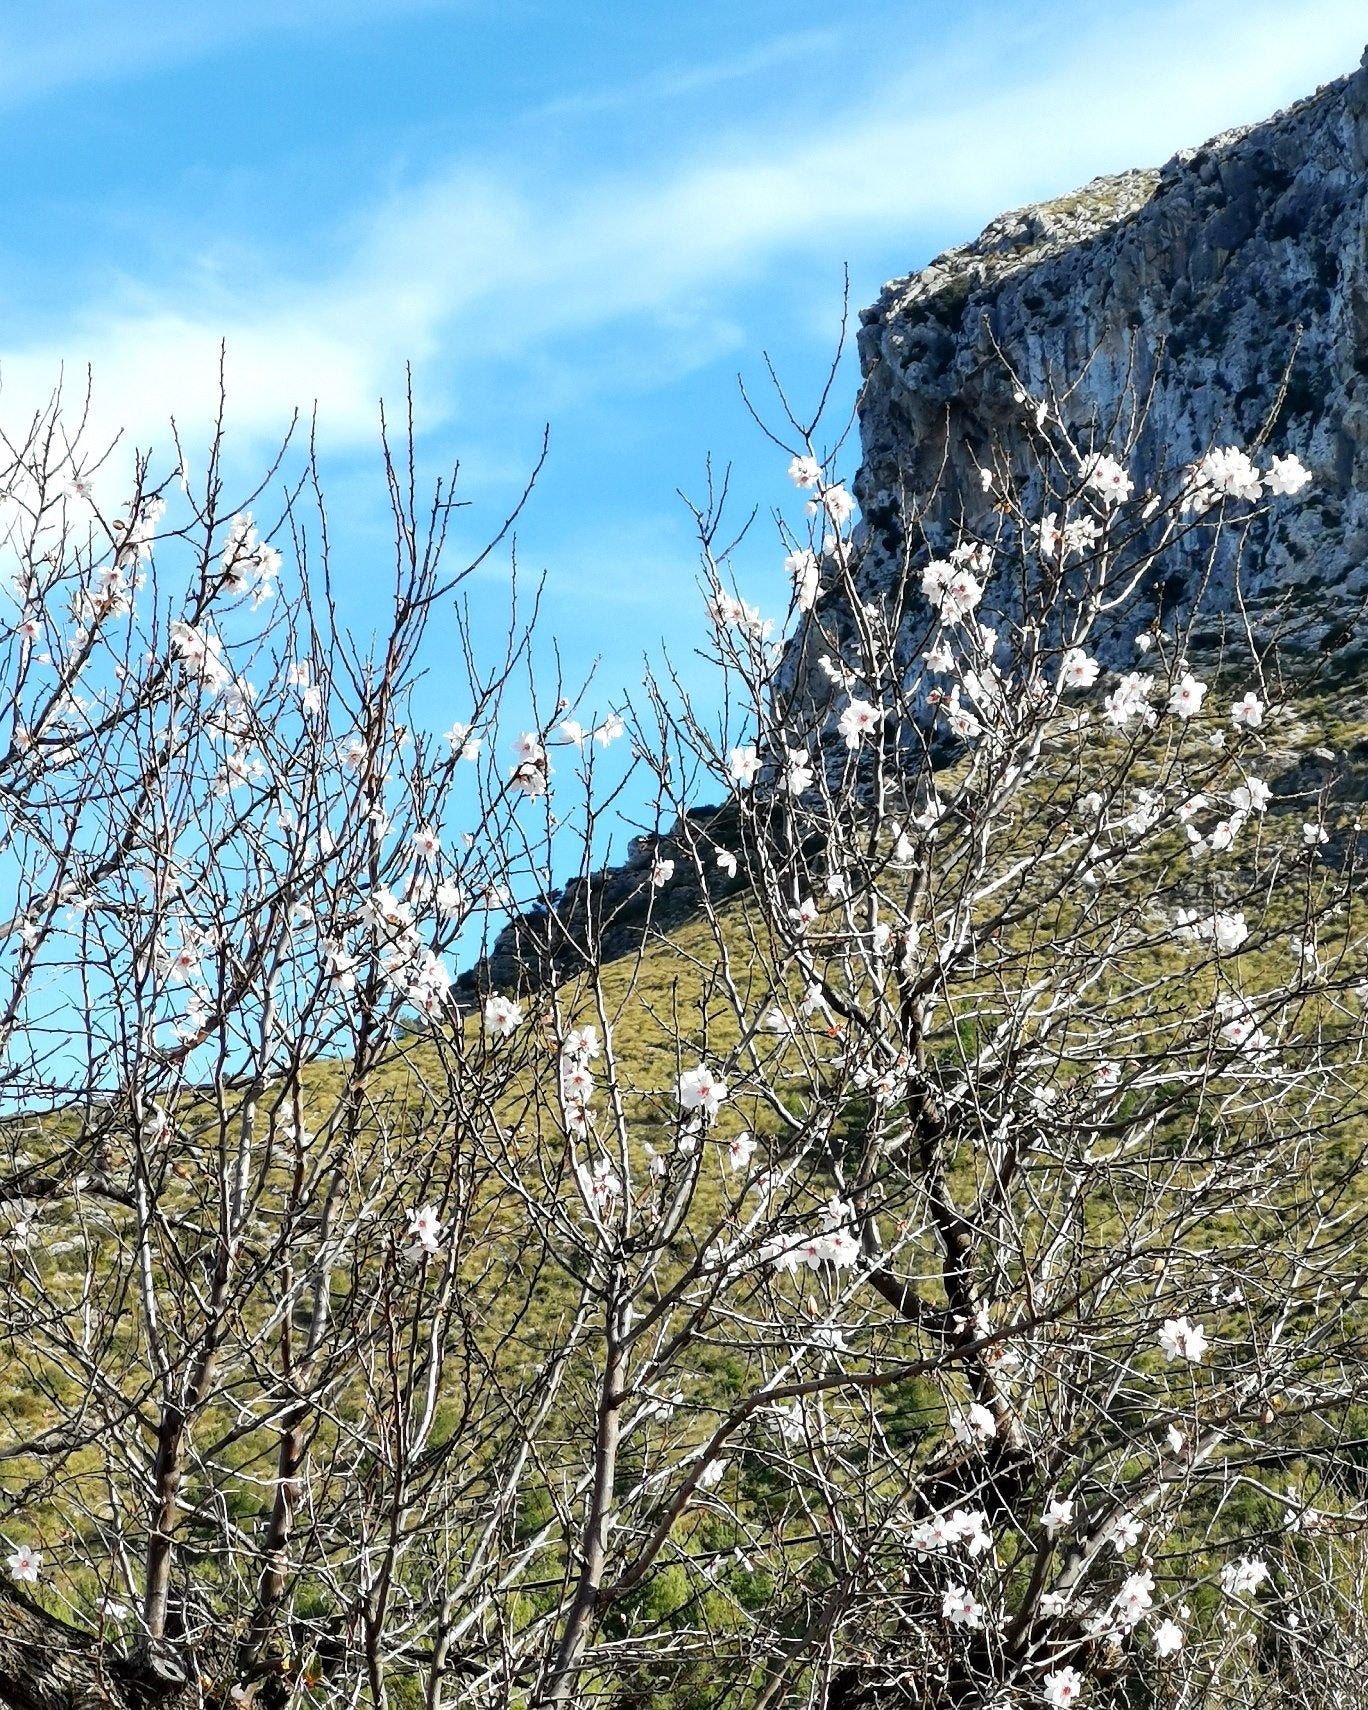 da ist sie wieder, unsere geliebte Mandelblüte auf Mallorca